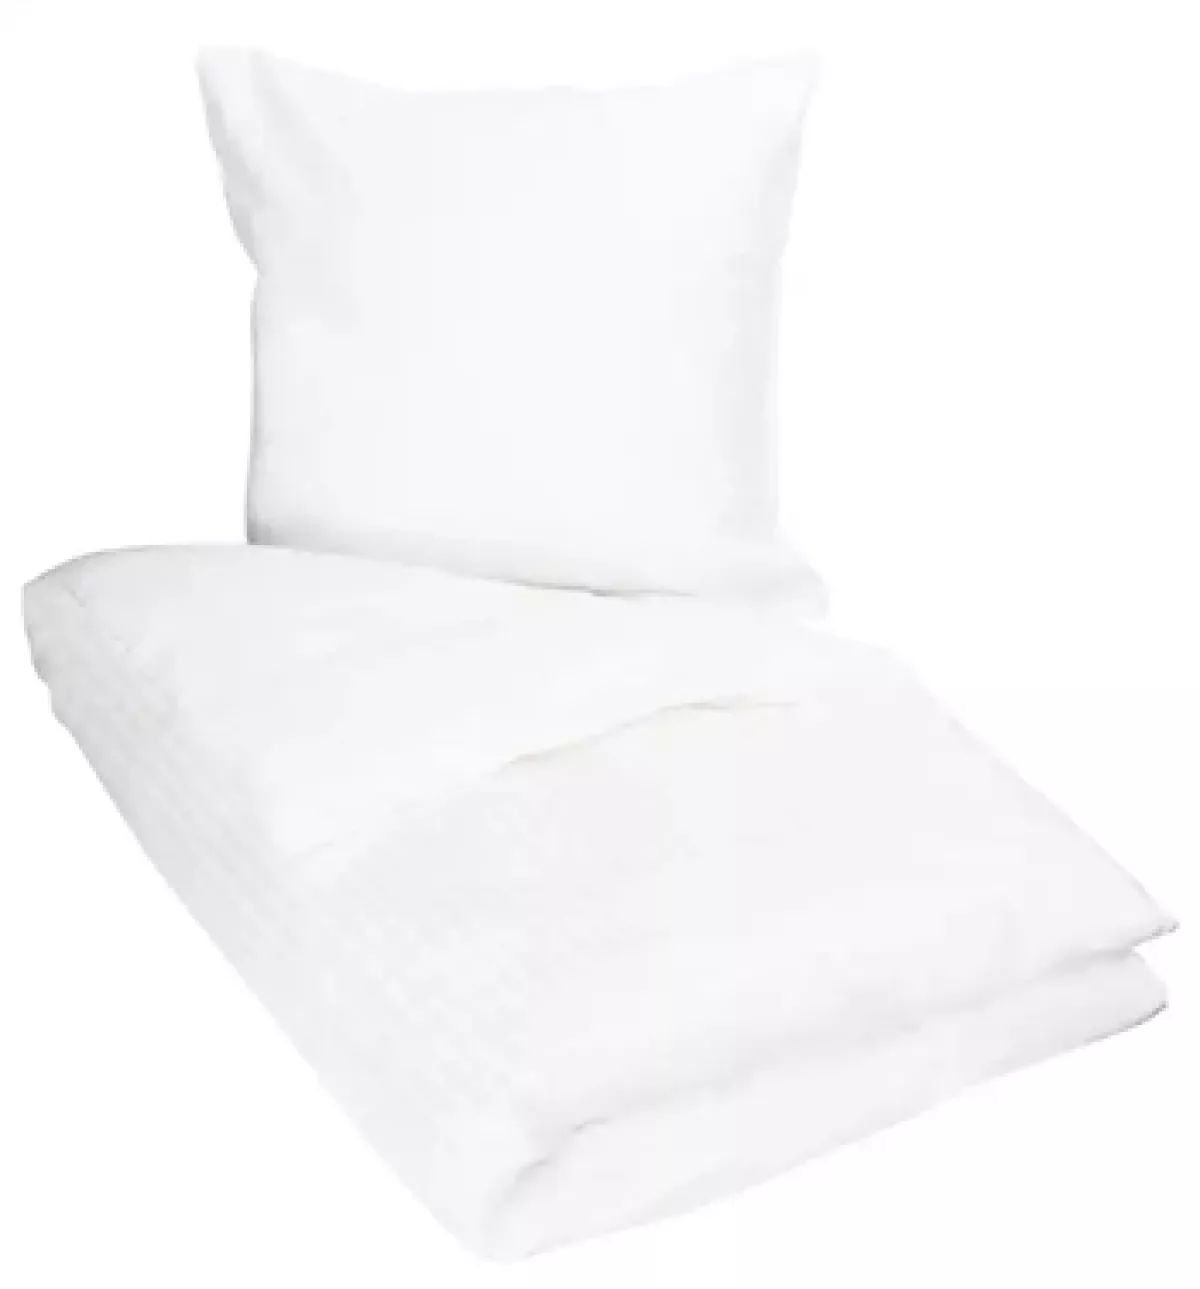 #1 - Hvidt sengetøj 140x200 cm - Sengesæt i 100% Bomuldssatin - Borg Living sengelinned